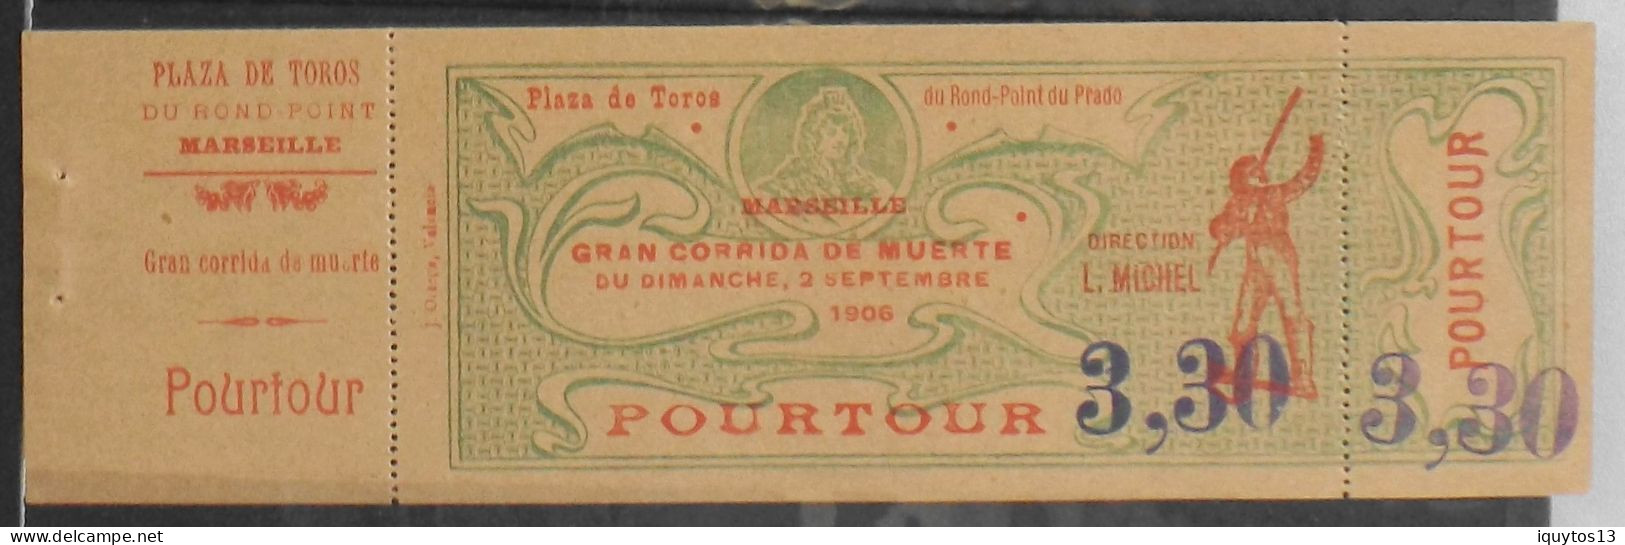 POURTOUR > Marseille Gran Corrida De Muerte Le 2.9.1906 - Plaza De Toros Du Rond Point Prado - Dir. L. MICHEL - TBE - Tickets D'entrée